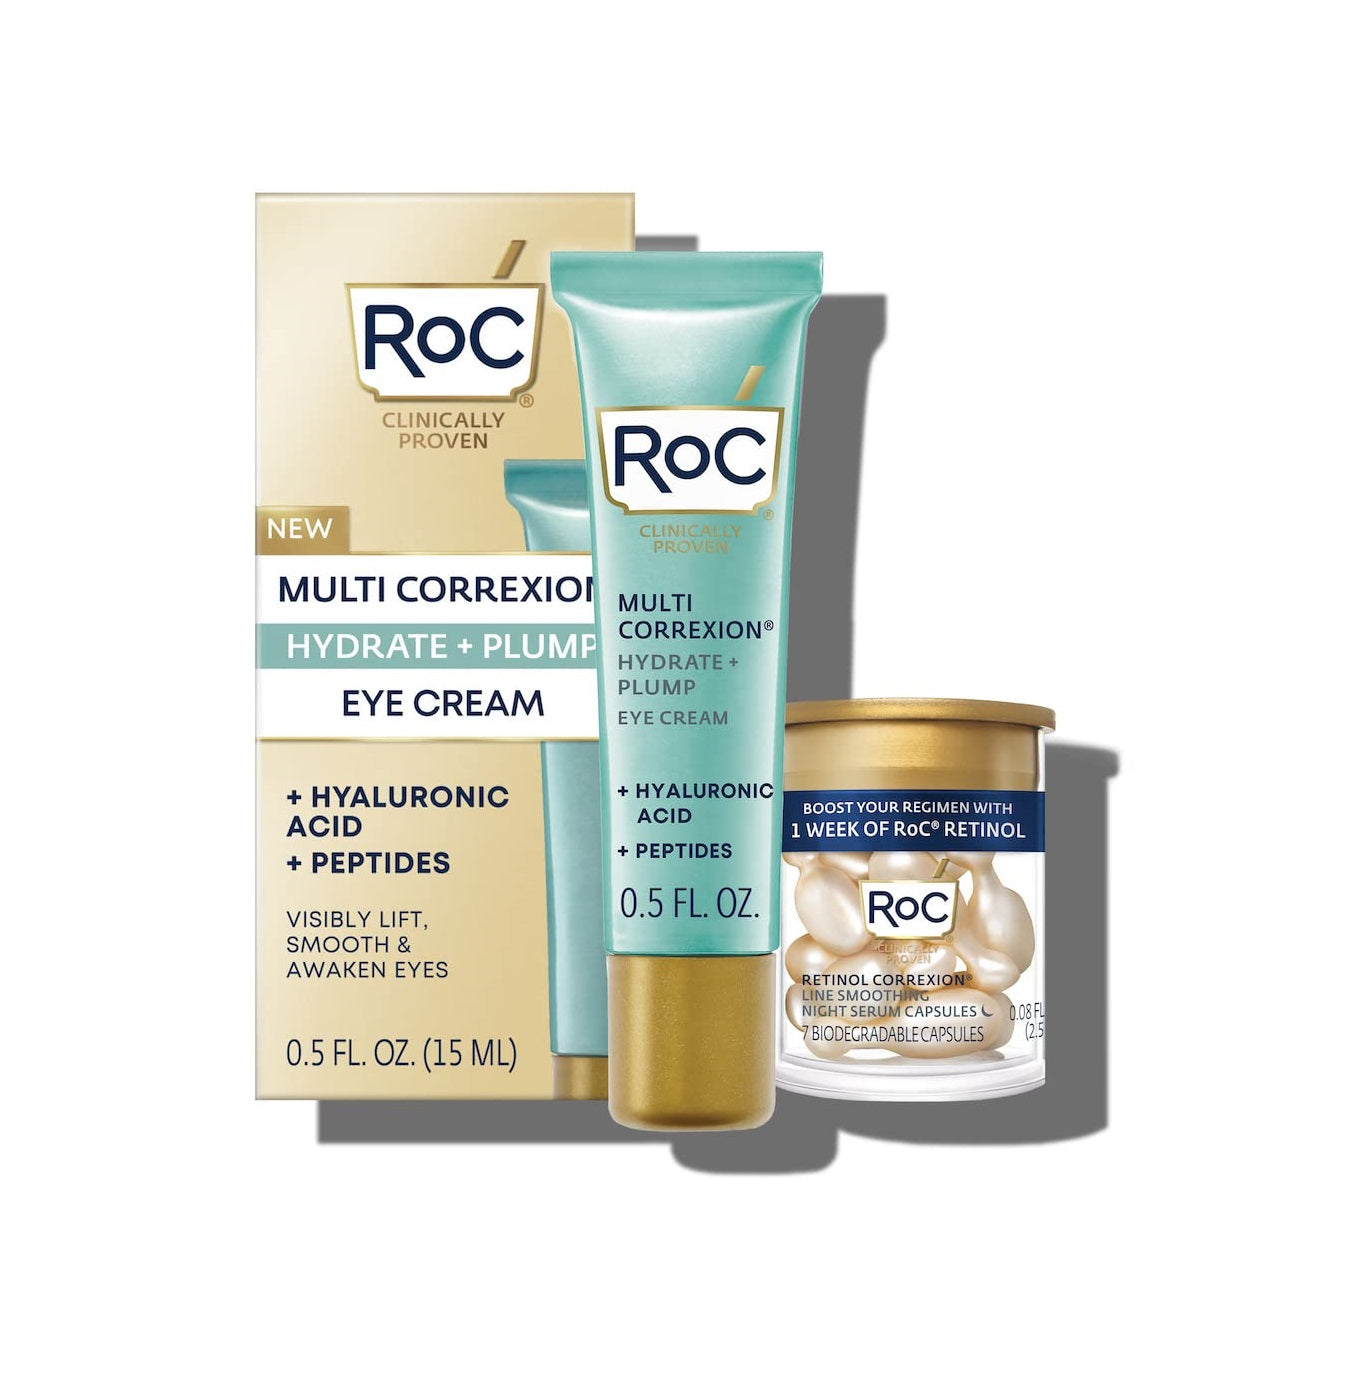 RoC - Crema anti envejecimiento+ cápsulas de retinol